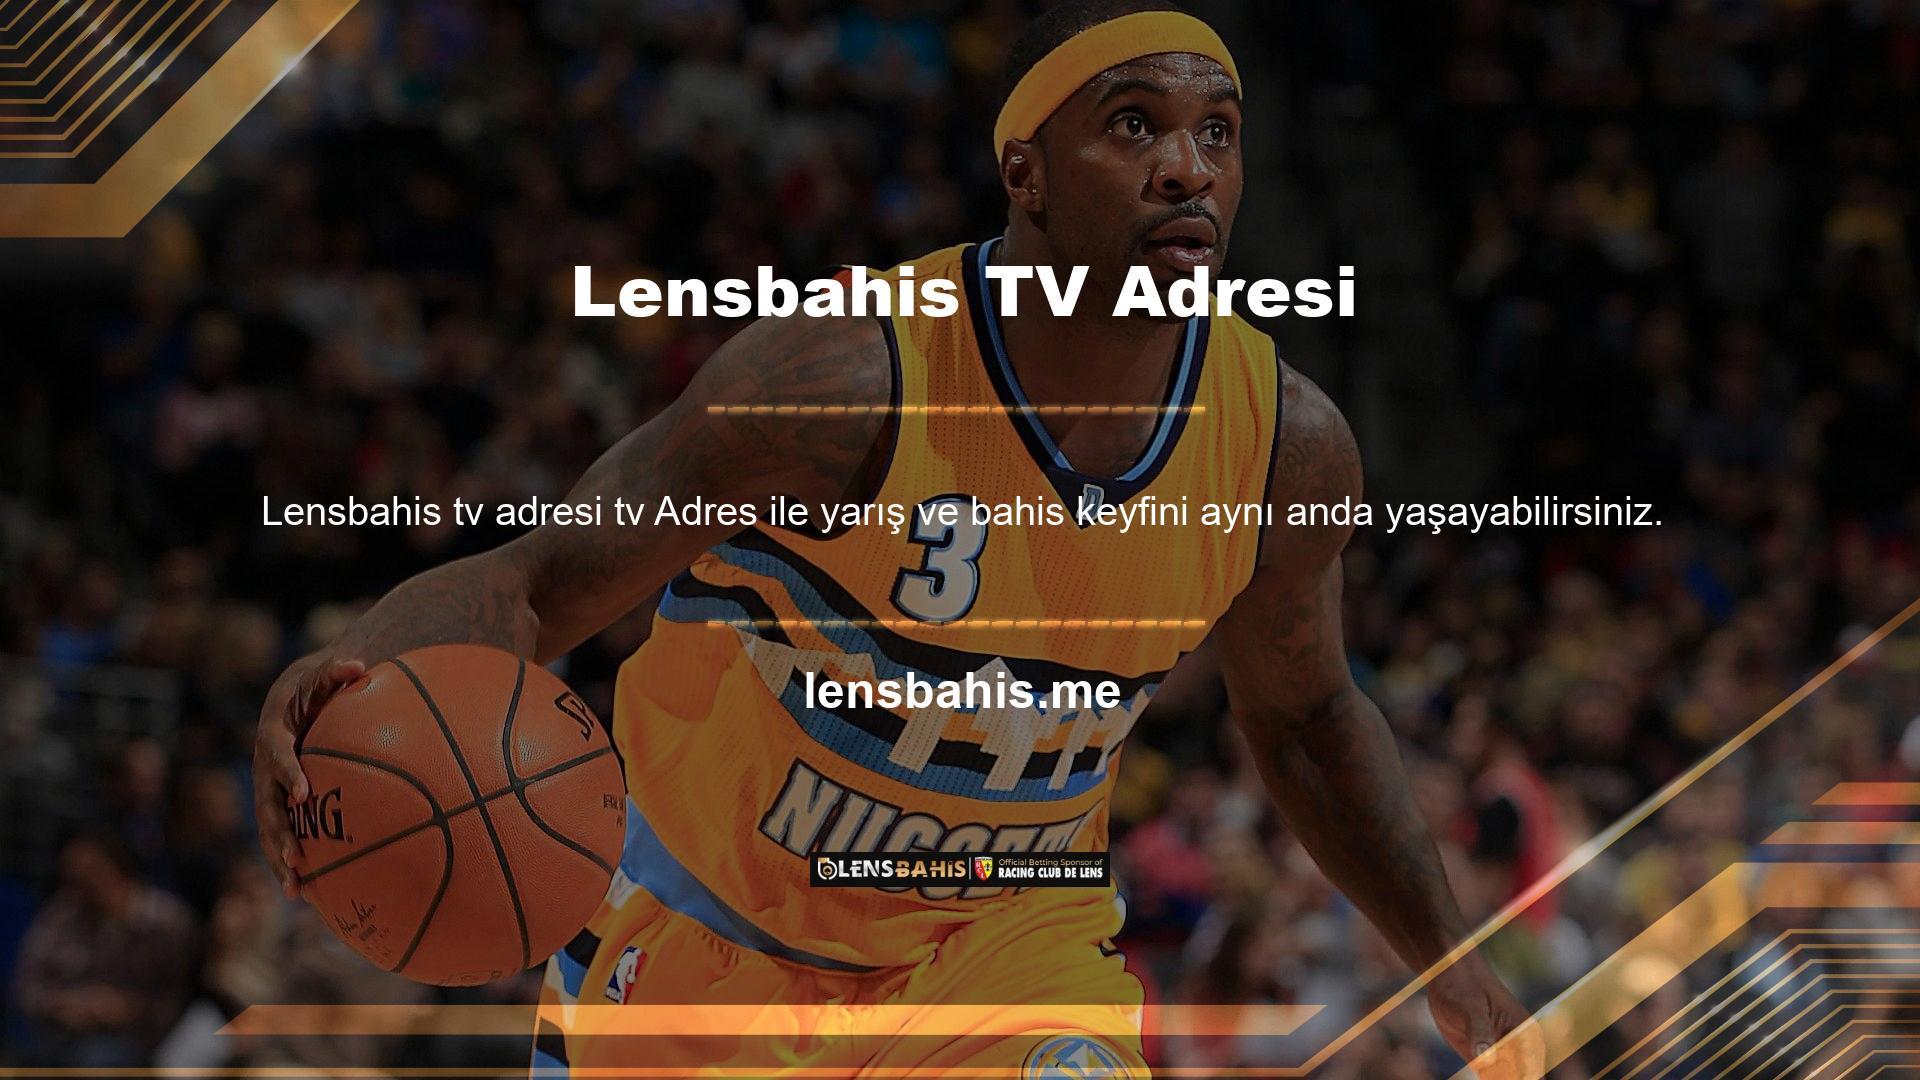 Lensbahis TV'de izlenen oyun programları, sektörün en sevilen ve oynanan oyunlarından bazılarını içerir